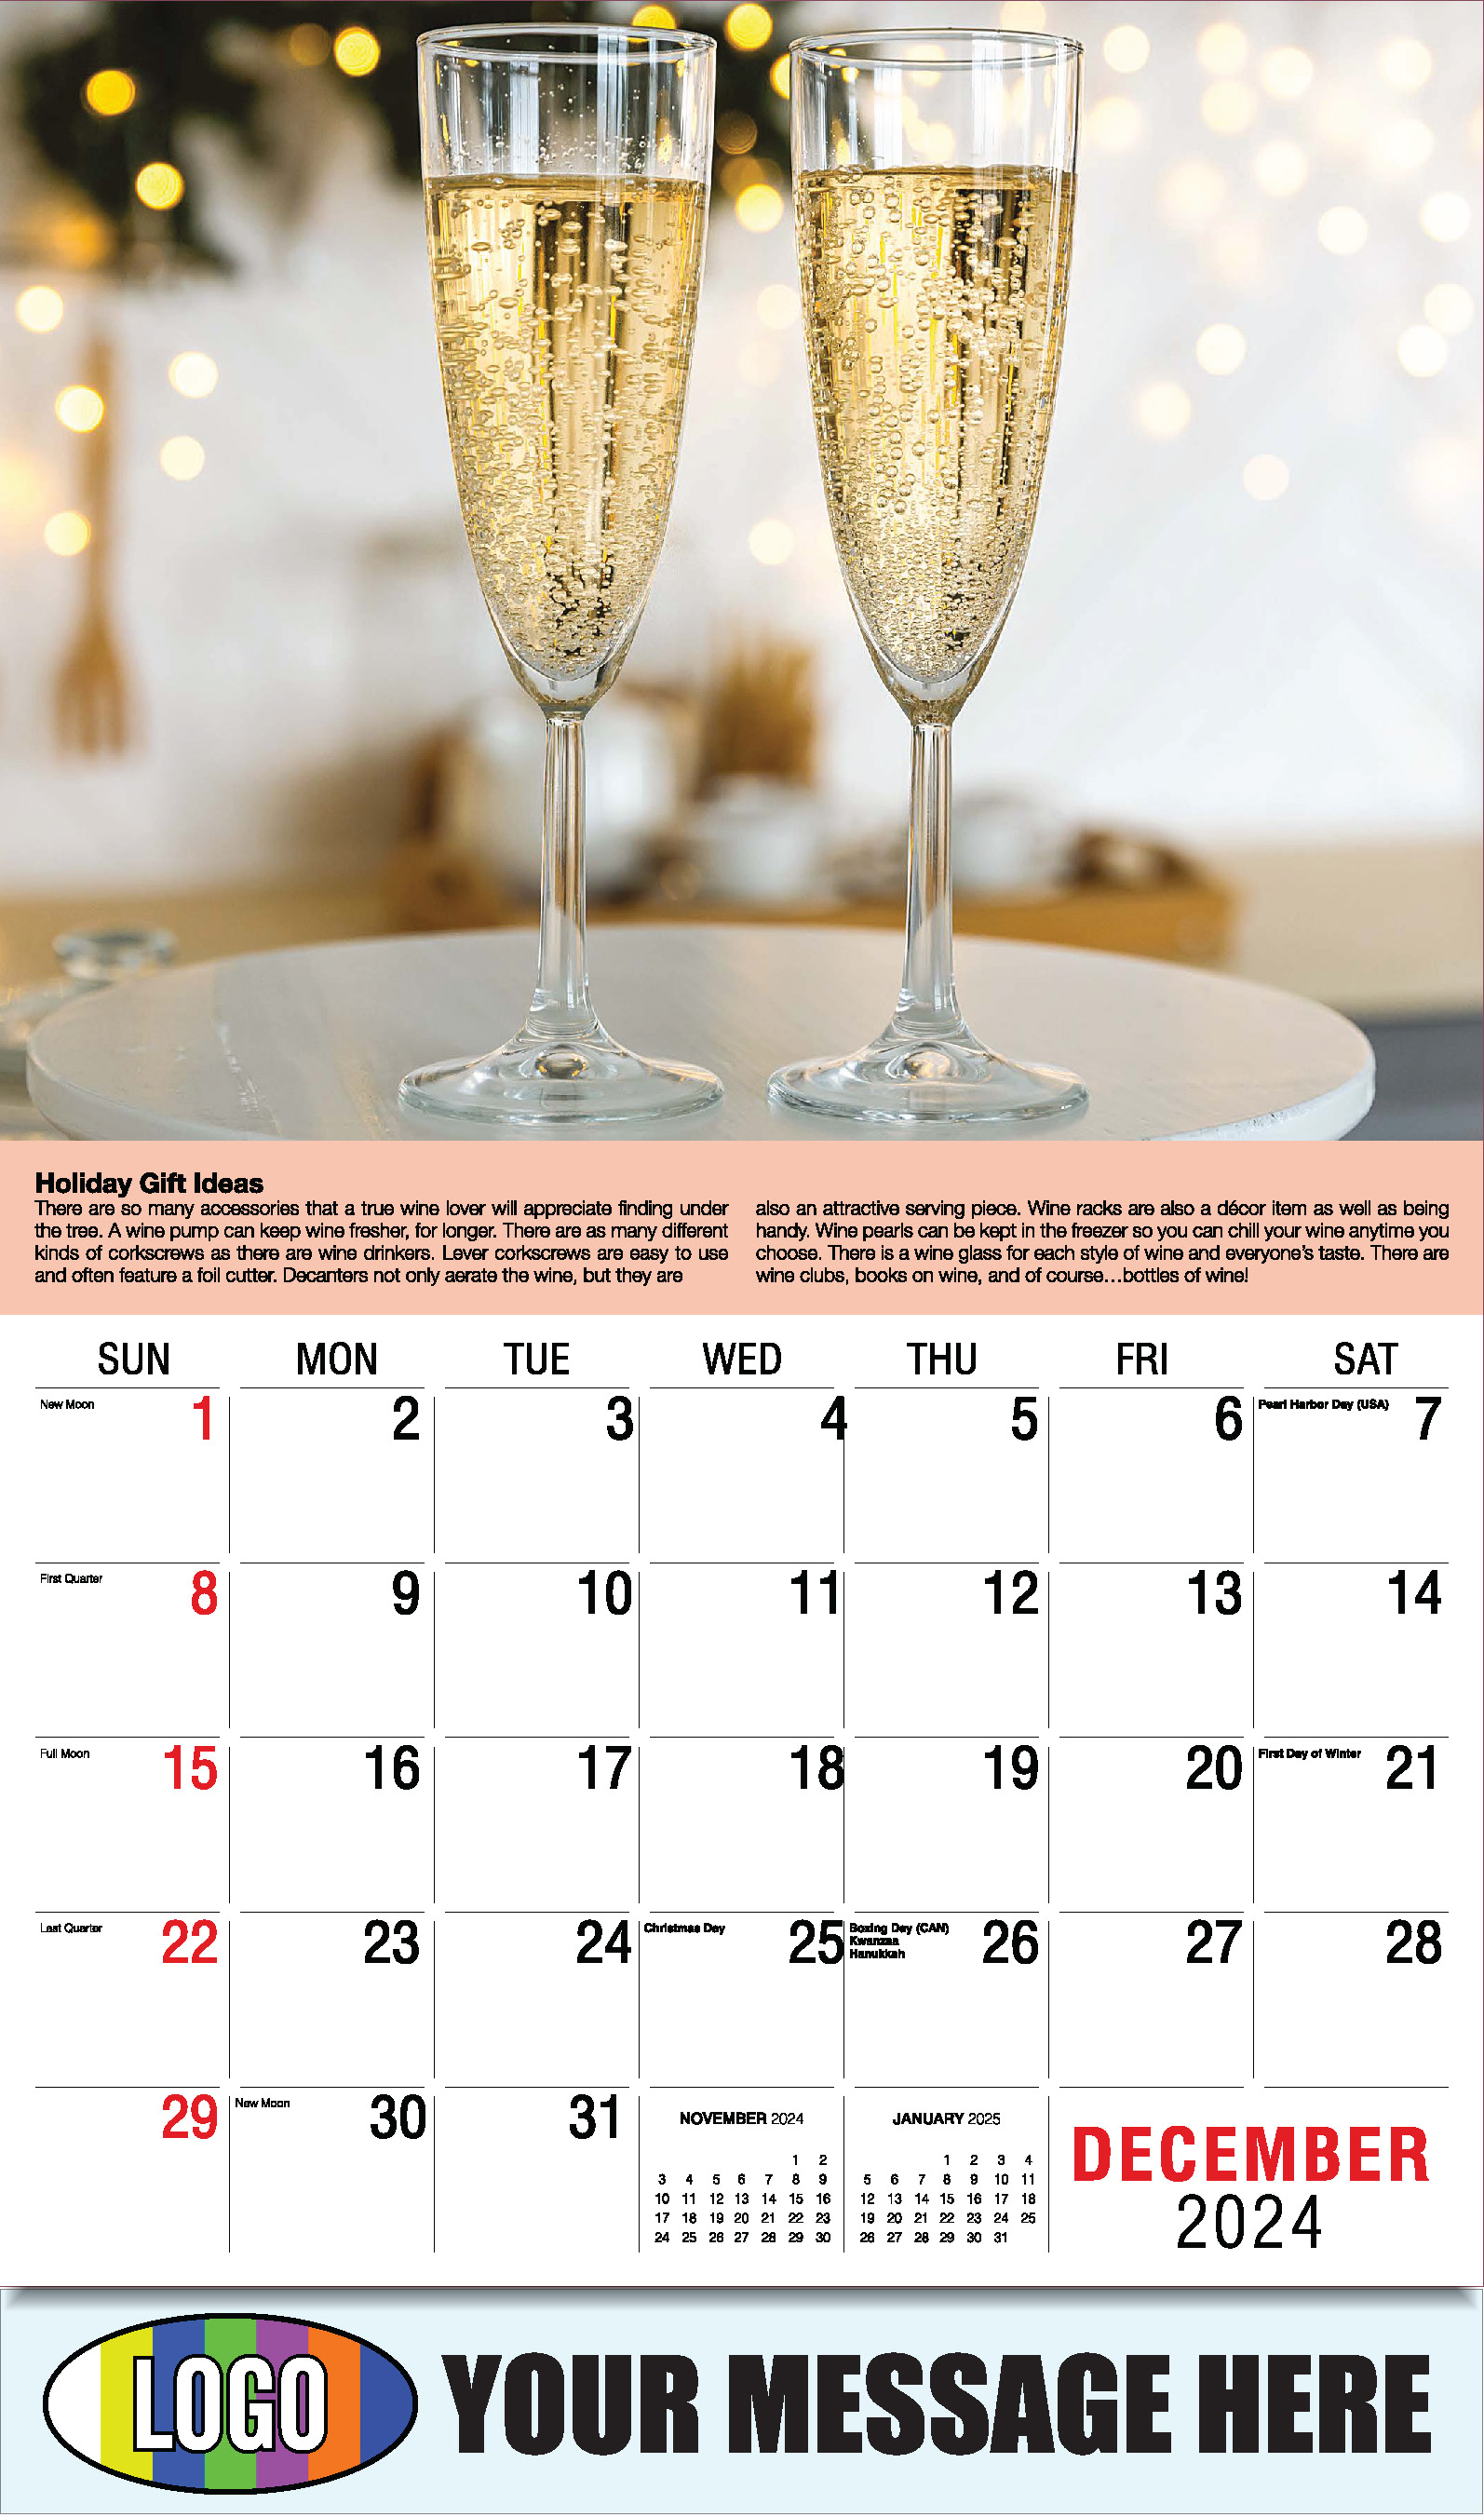 Vintages - Wine Tips 2025 Business Promo Calendar - December_a